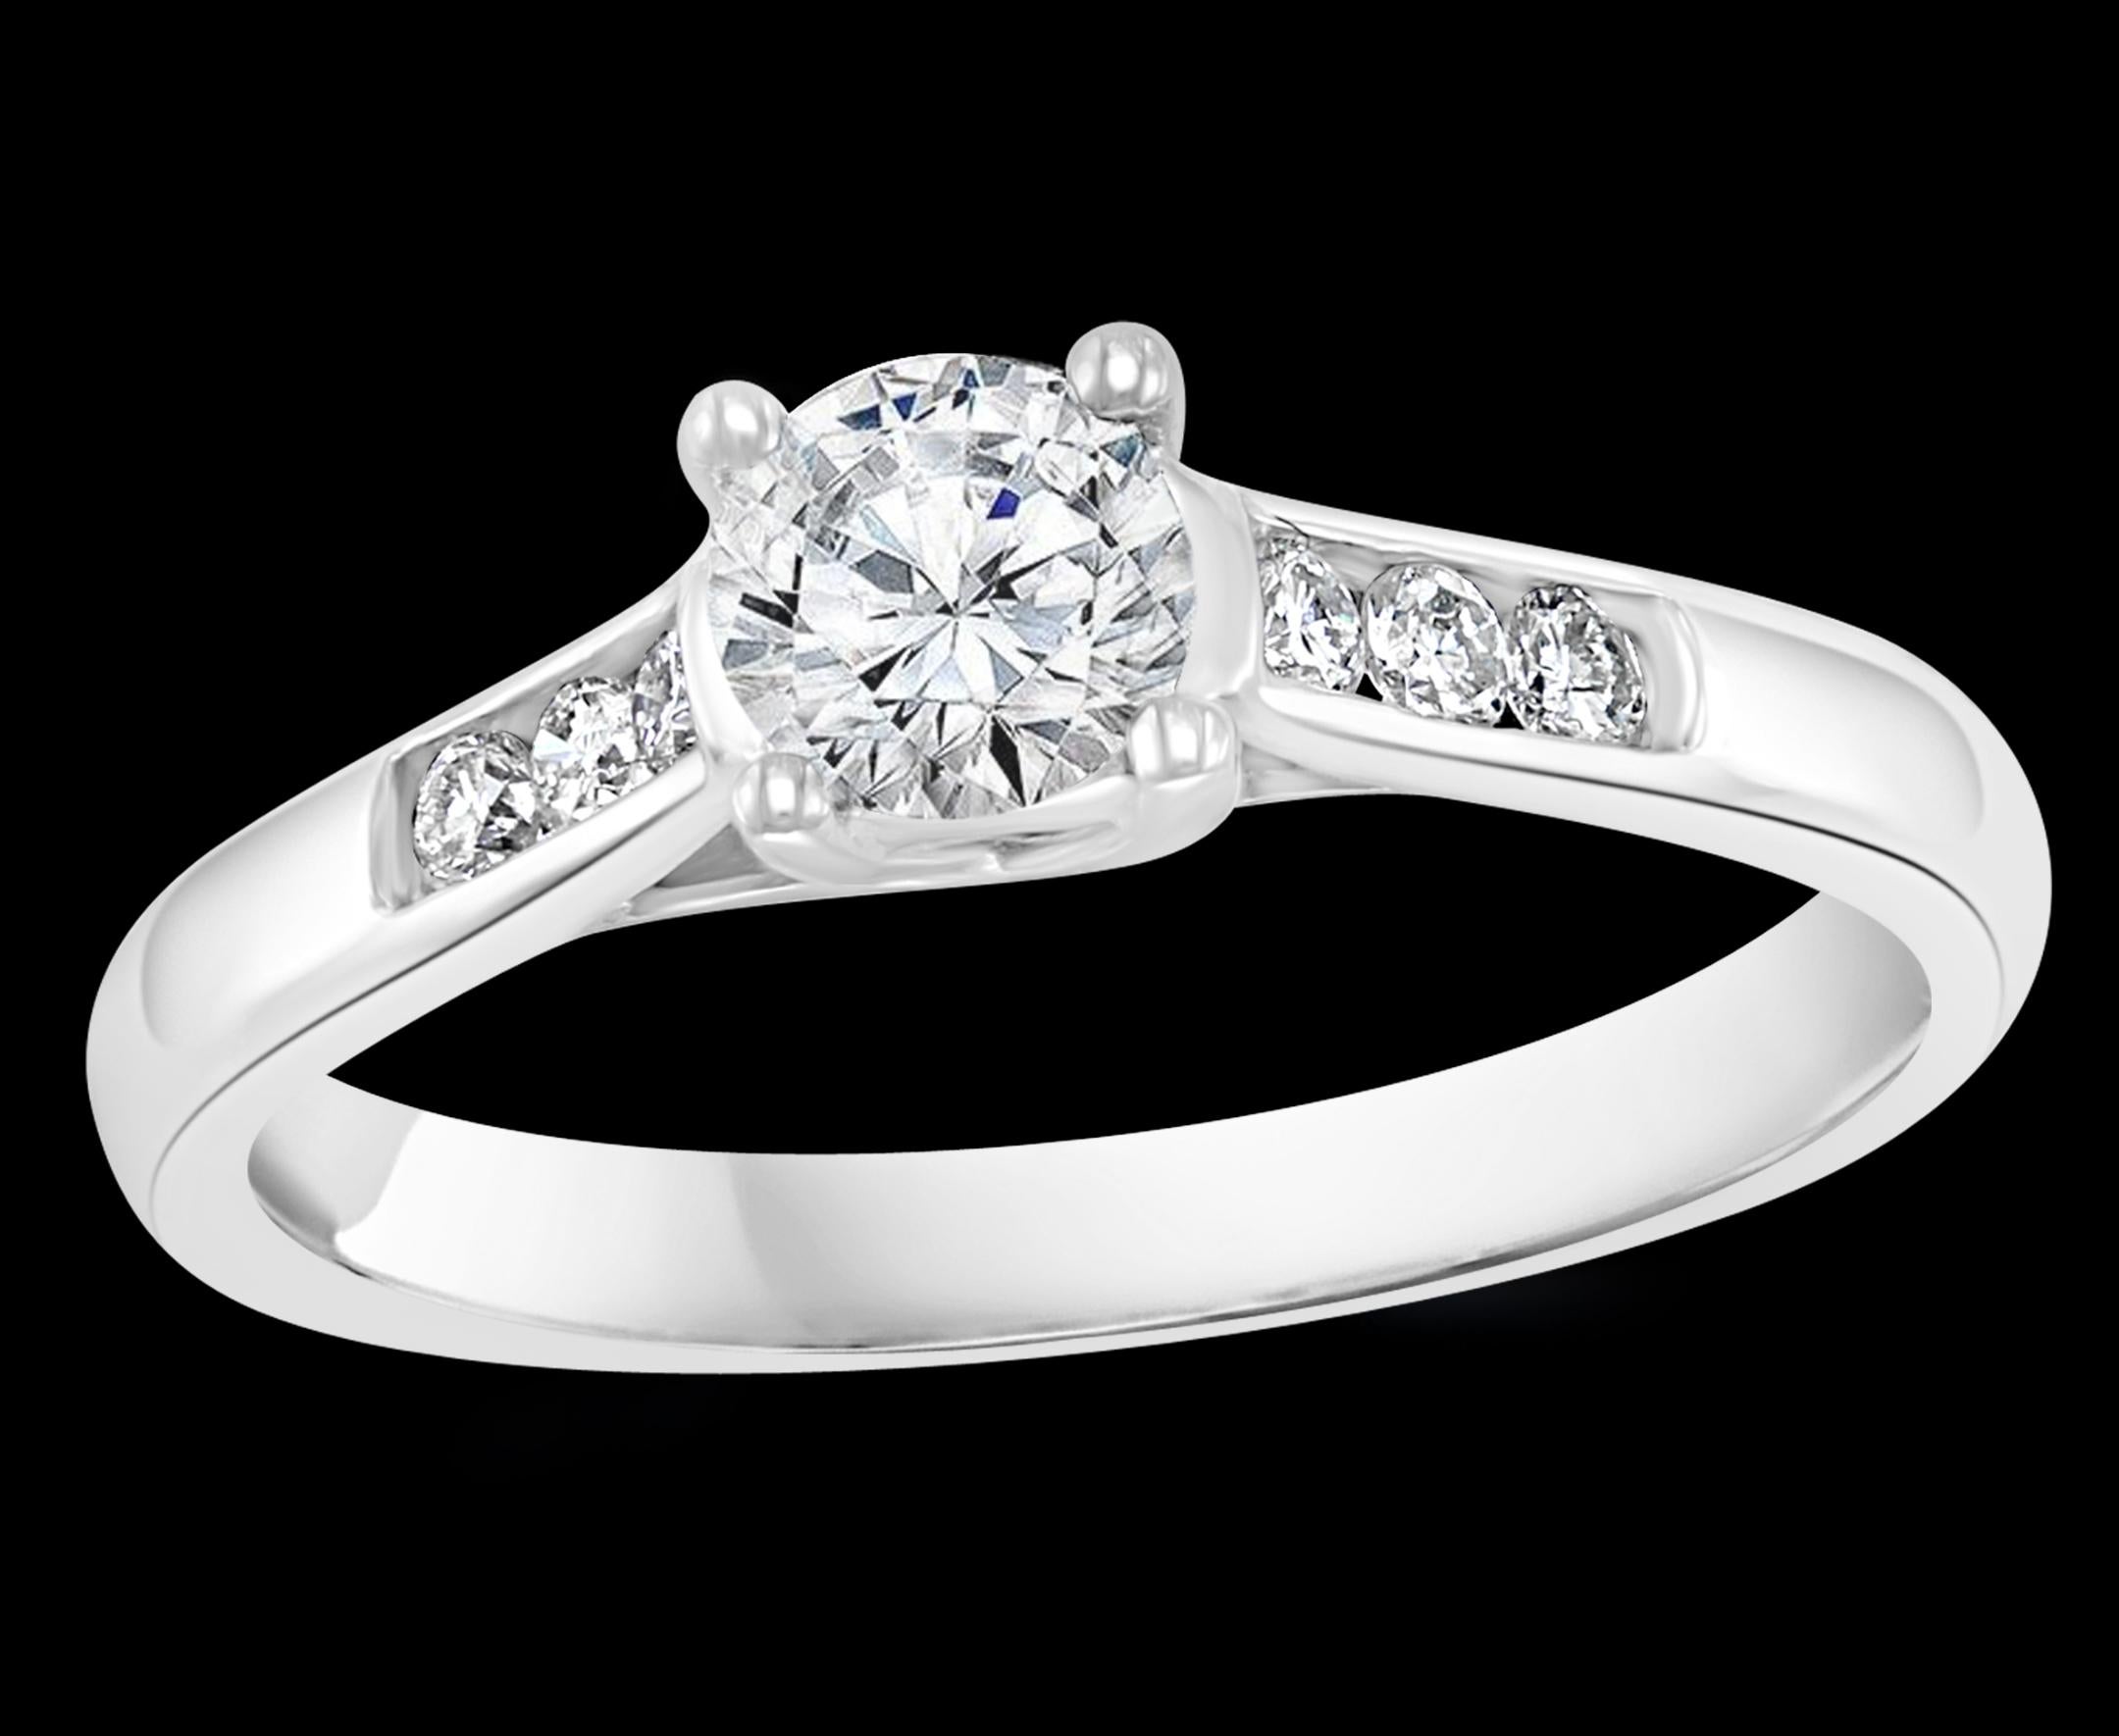 0.diamant de 75 carats  Bague/bandeau traditionnel en or blanc 14 carats

Diamant rond solitaire taille brillant d'environ 0,6 ct et 6 diamants taille brillant, trois de chaque côté   l'un à côté de l'autre.
La pierre centrale mesure environ 60